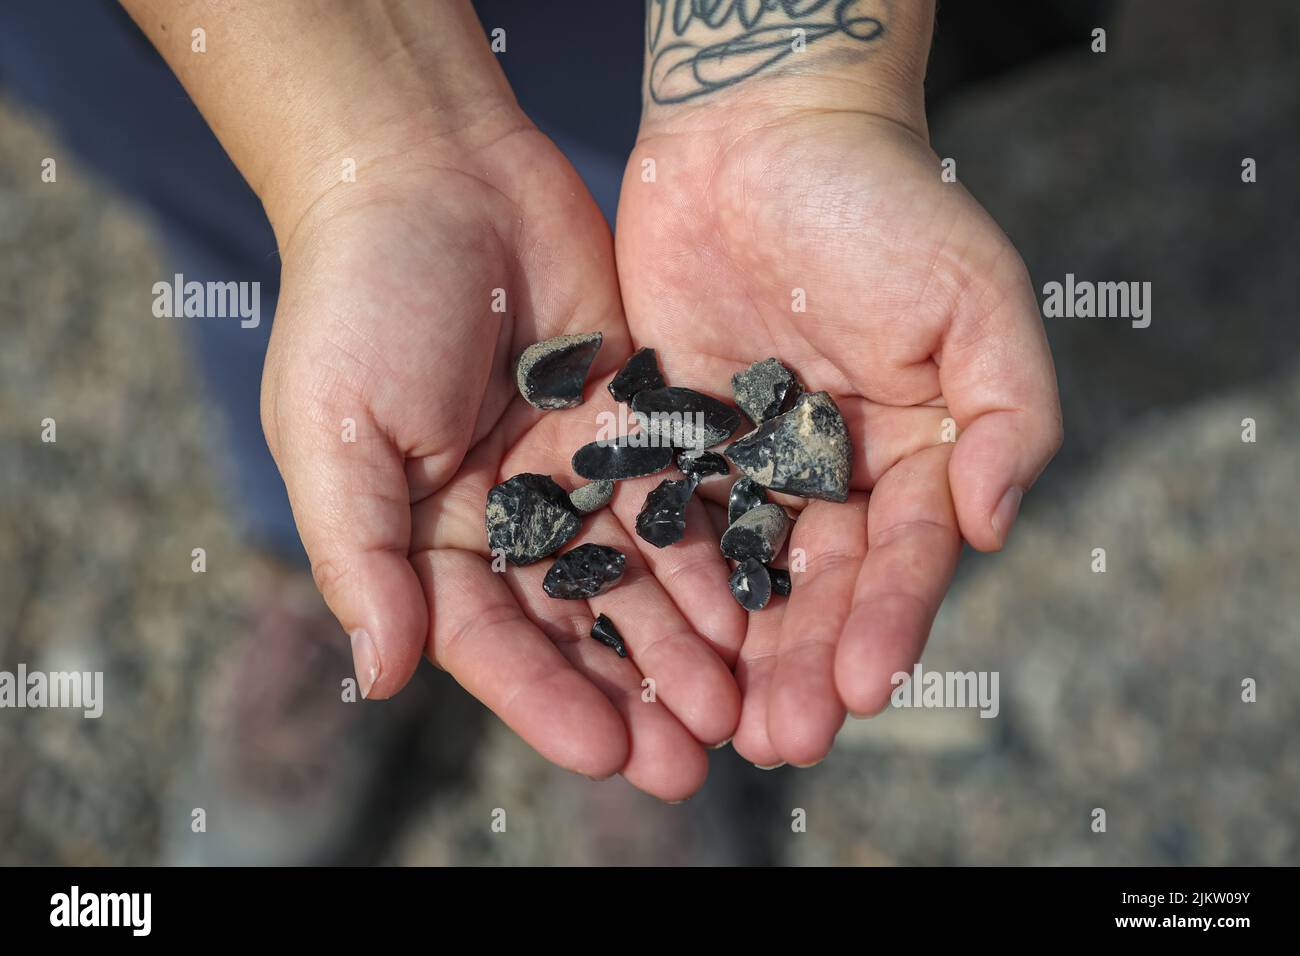 Ein Wanderer zeigt eine Handvoll Obsidian-Felsen, die auf einer Wanderung in der Nähe der östlichen Sierra von Calfornia gefunden wurden. Stockfoto